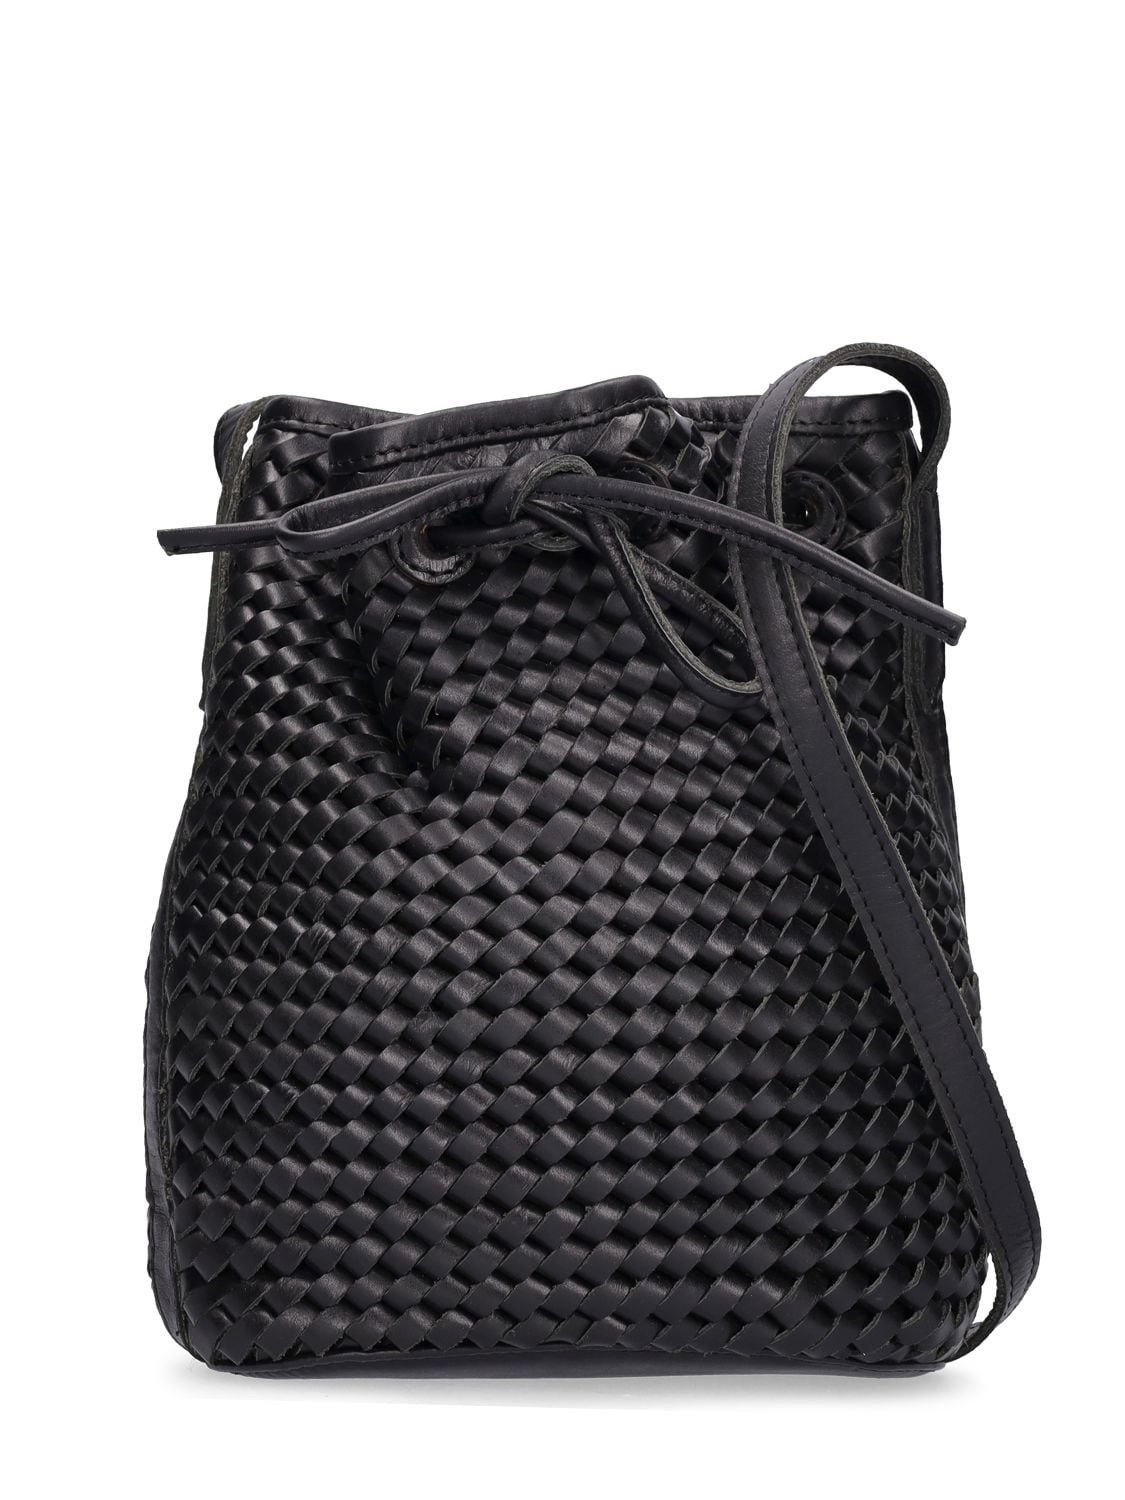 BEMBIEN Isabelle Leather Bucket Bag